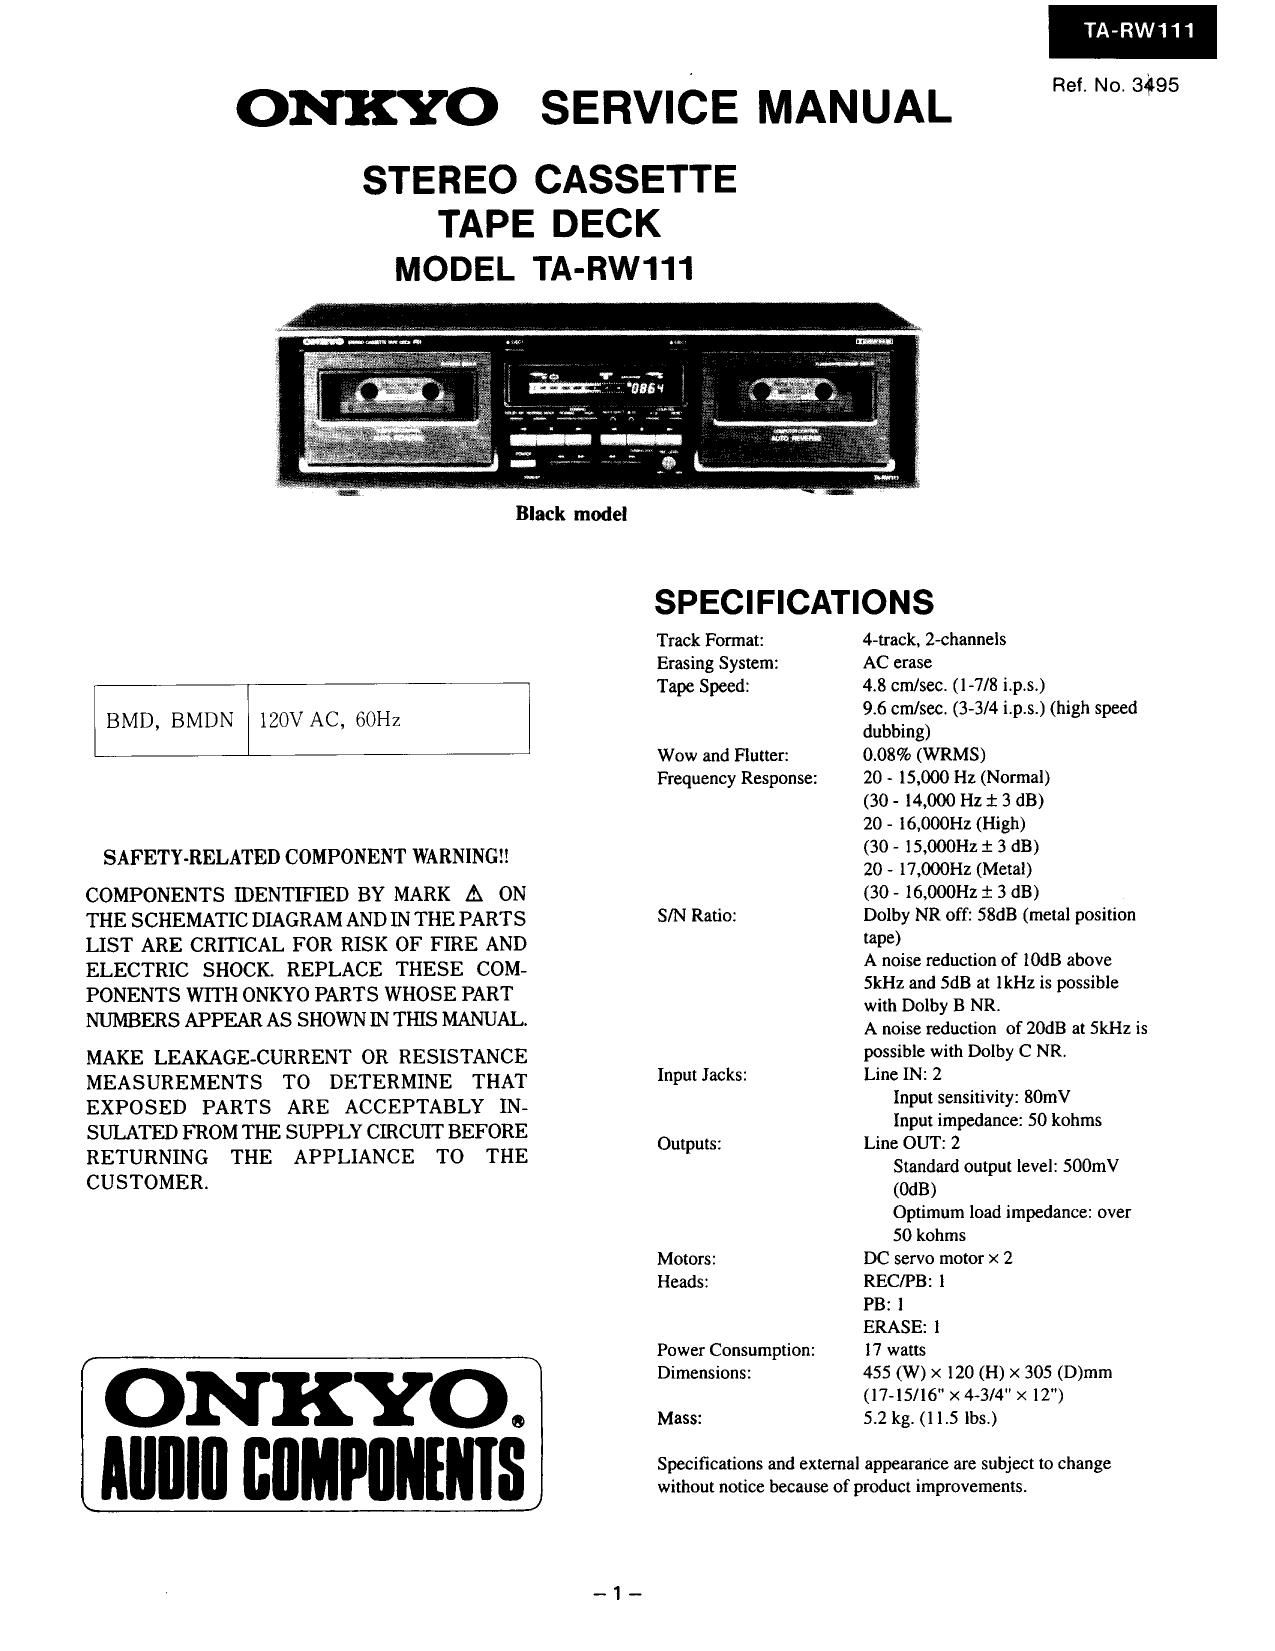 Onkyo TARW 111 Service Manual